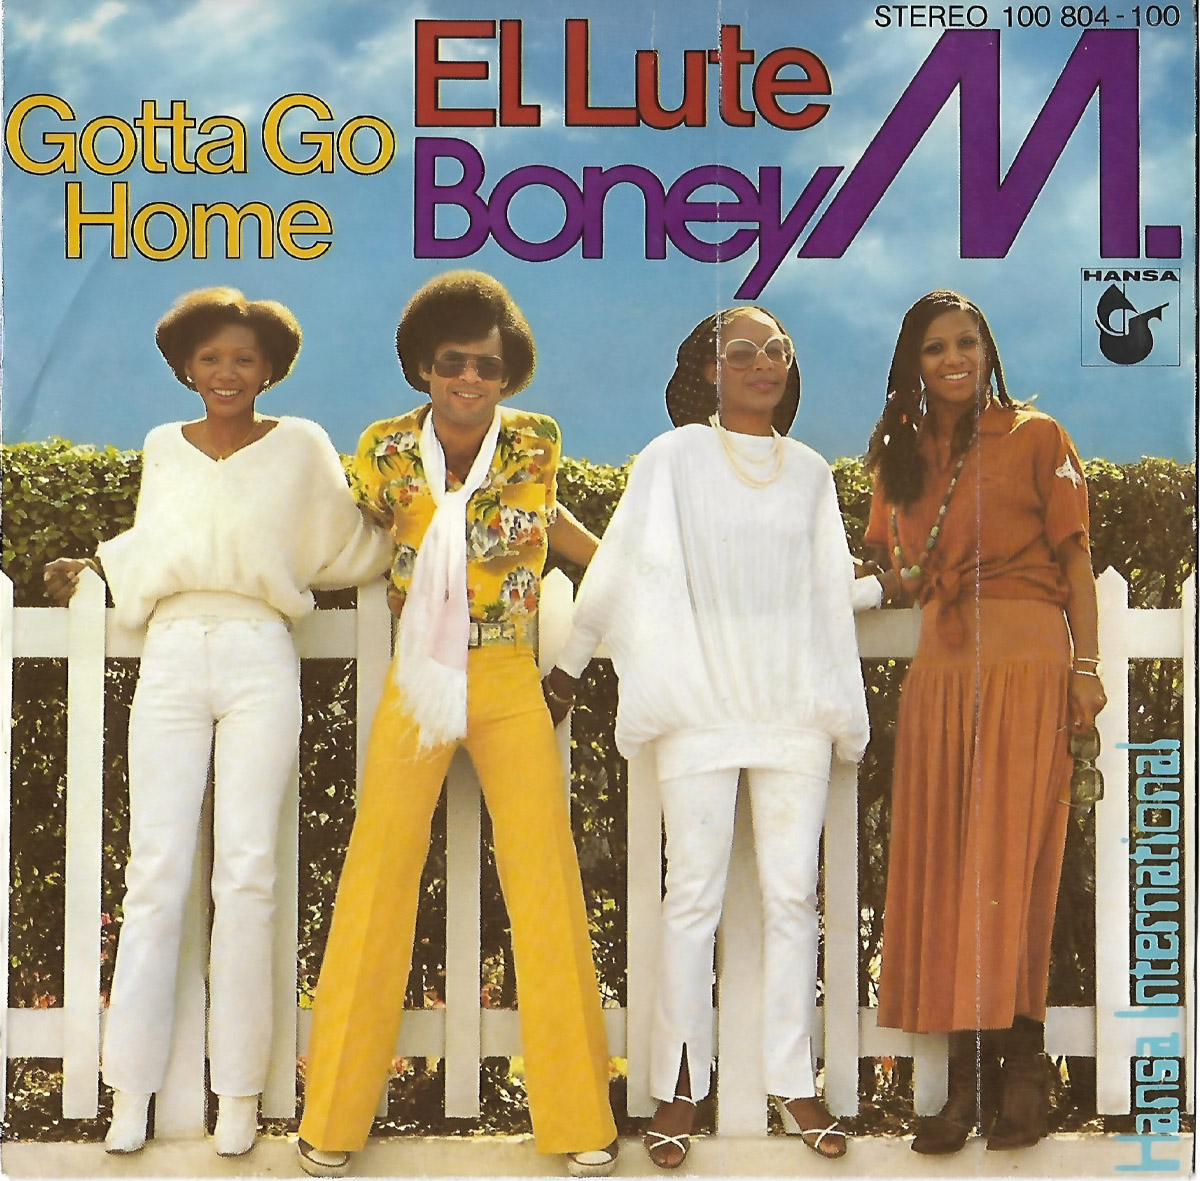 Обложка сингла Boney M. 1979 года